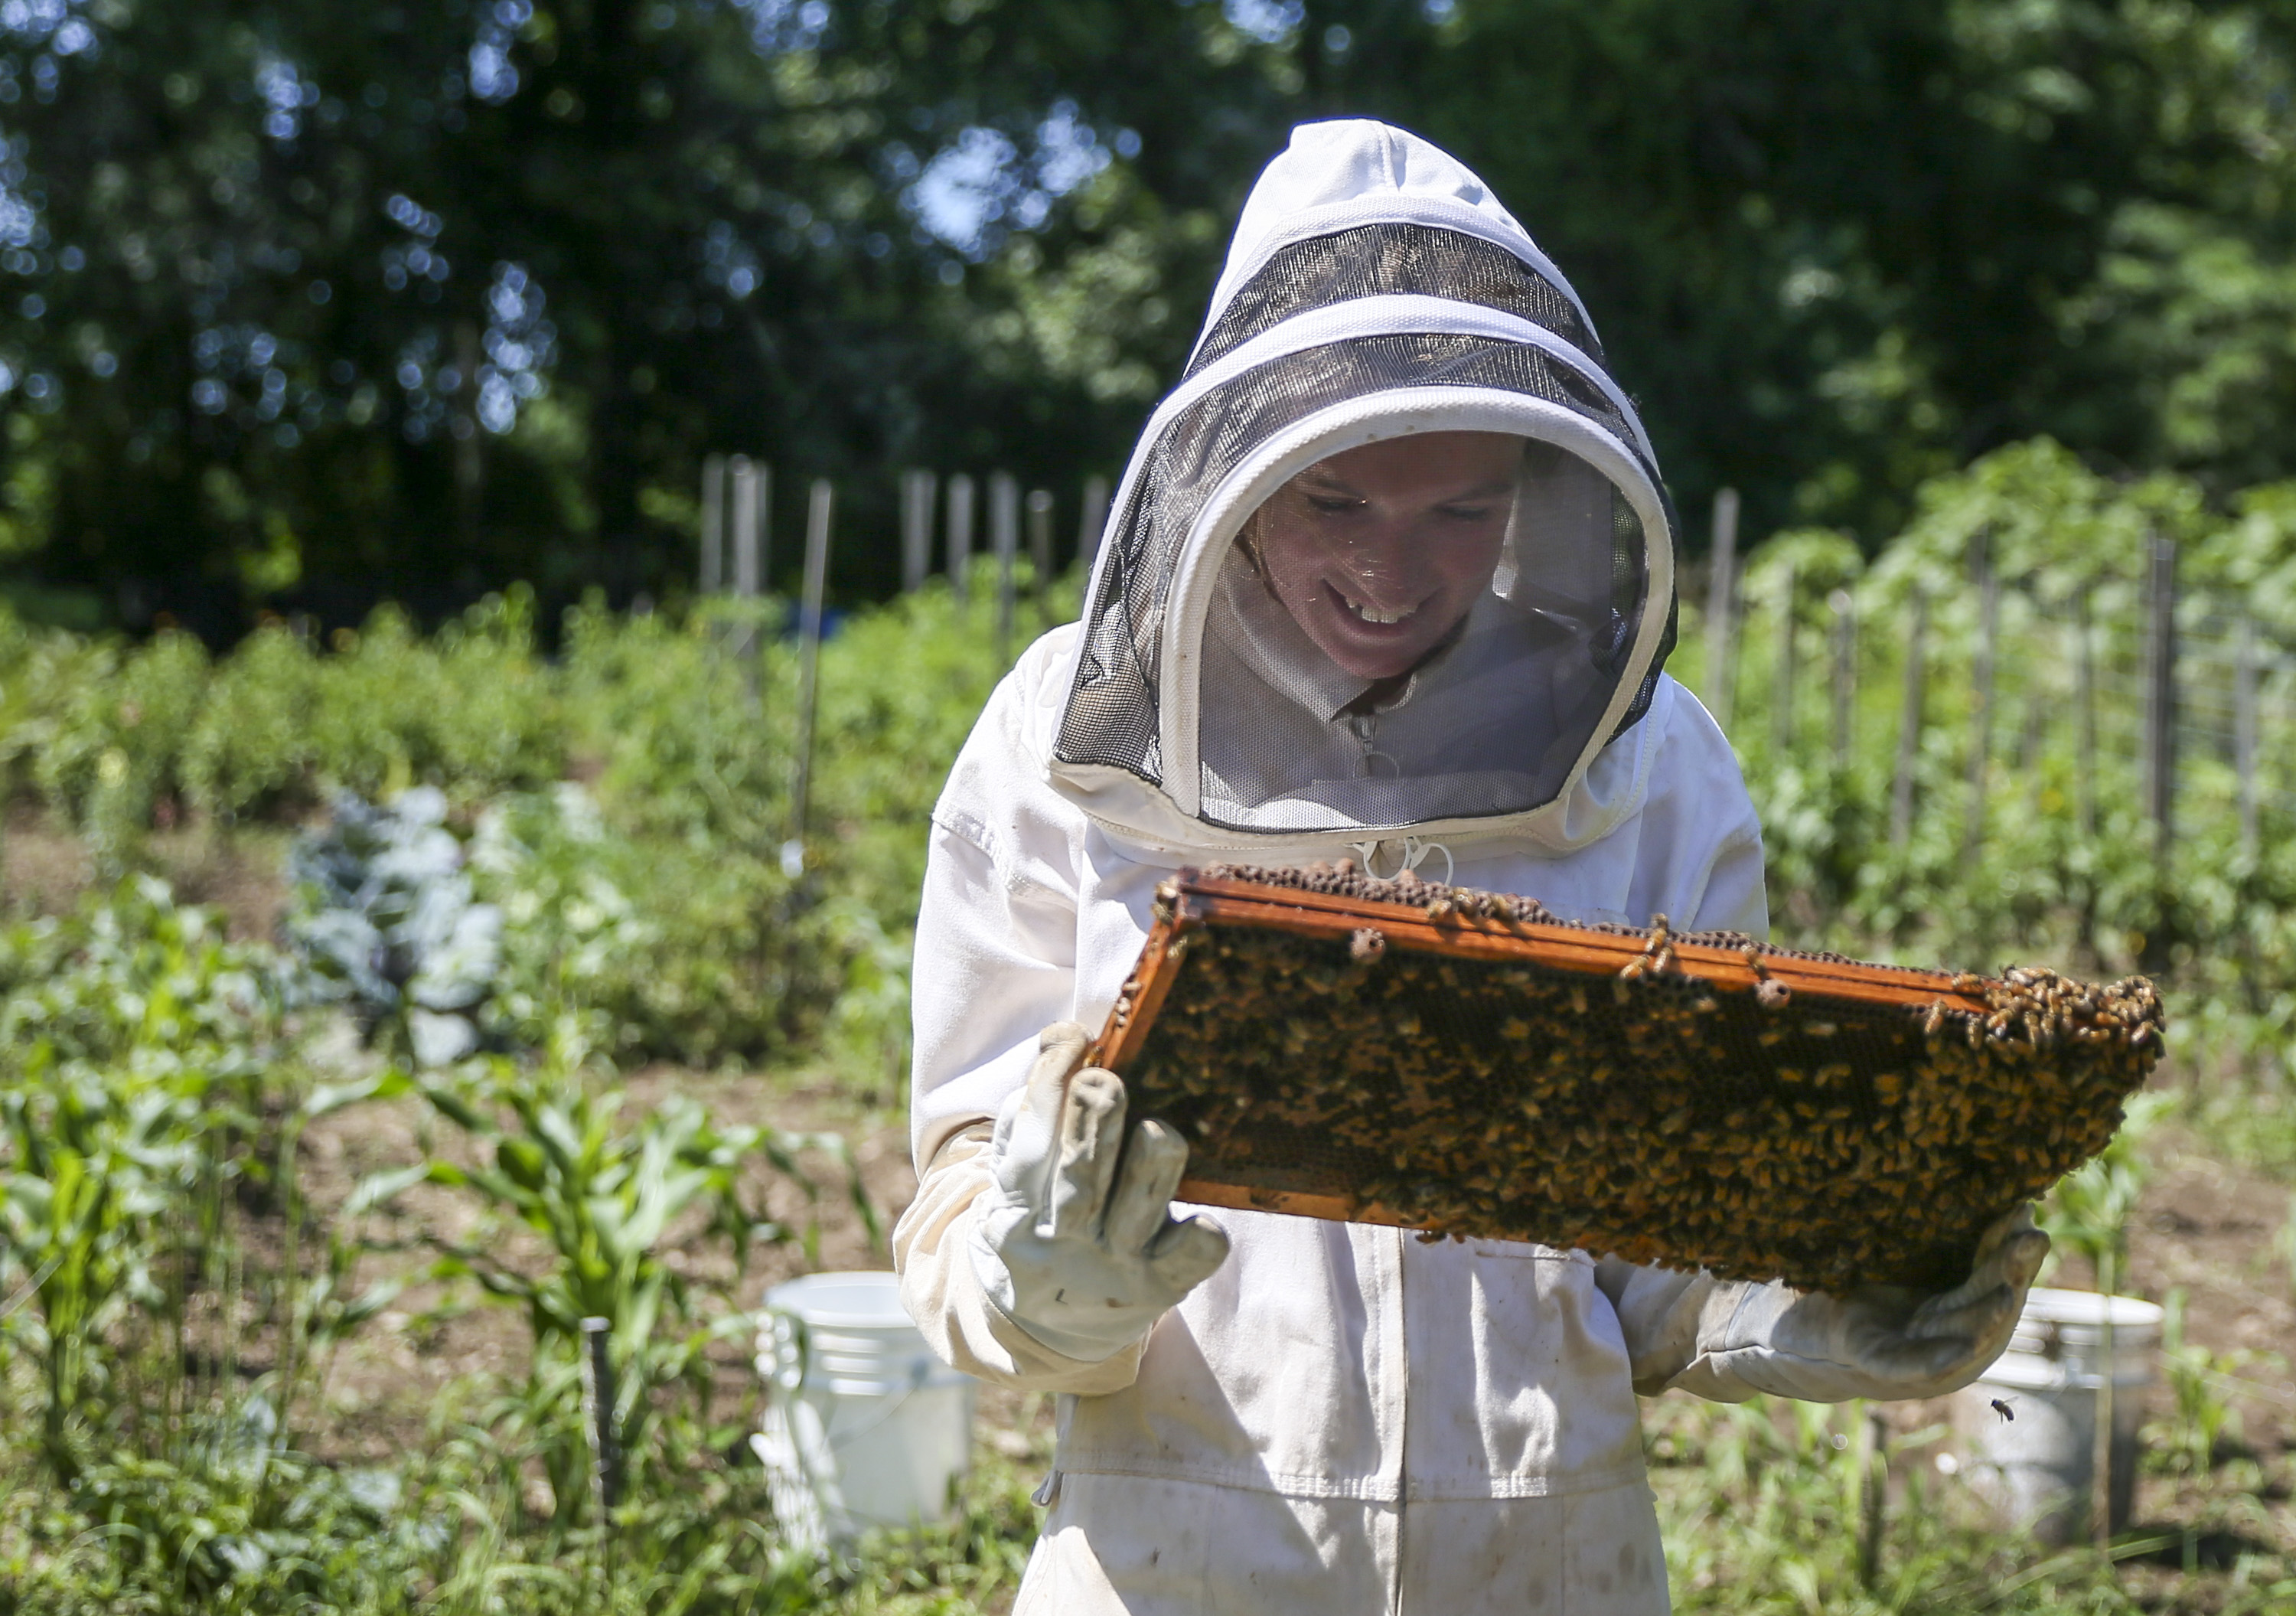 100% Pure Beeswax Brick - Queen Bee Gardens